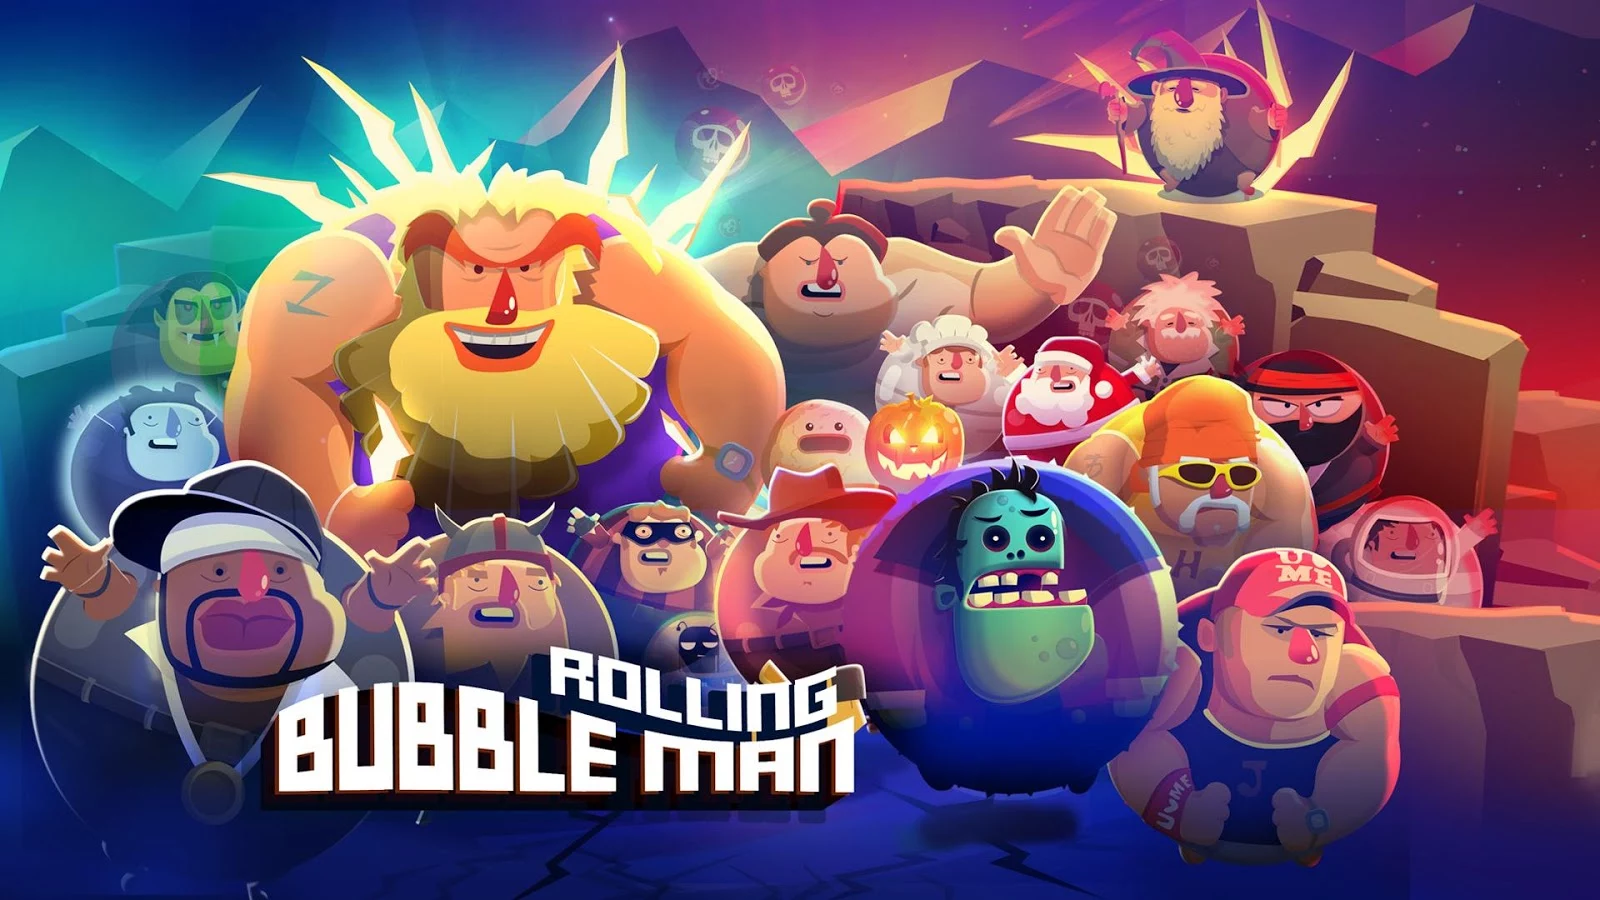   Bubble Man: Rolling: captura de tela 